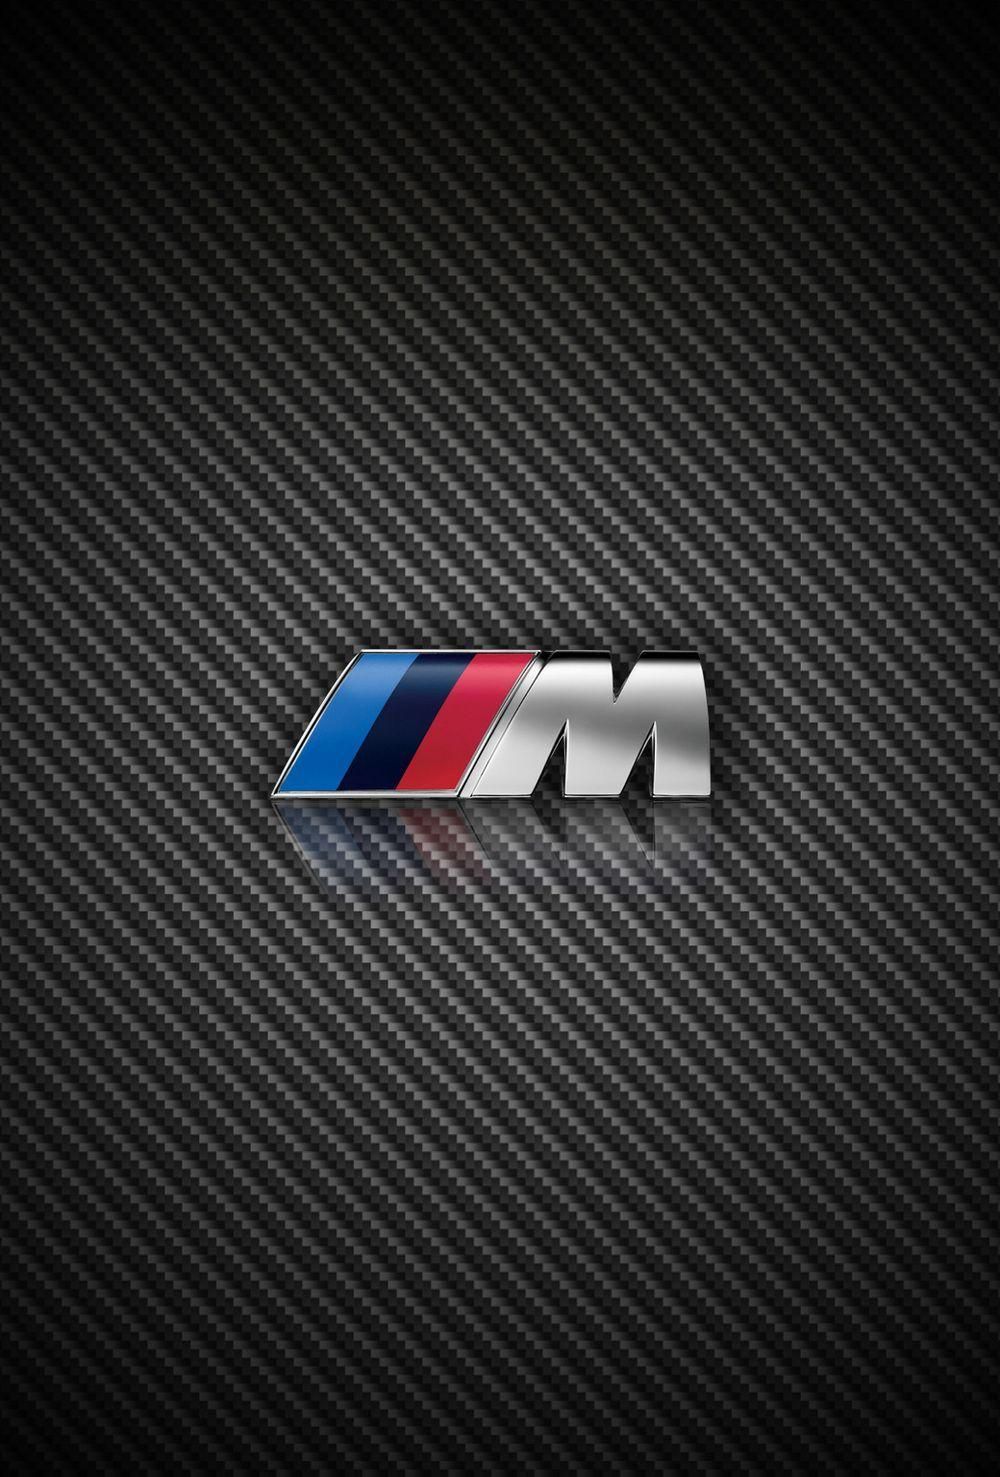 BMW M Logo Wallpaper. Bmw wallpaper, Bmw m